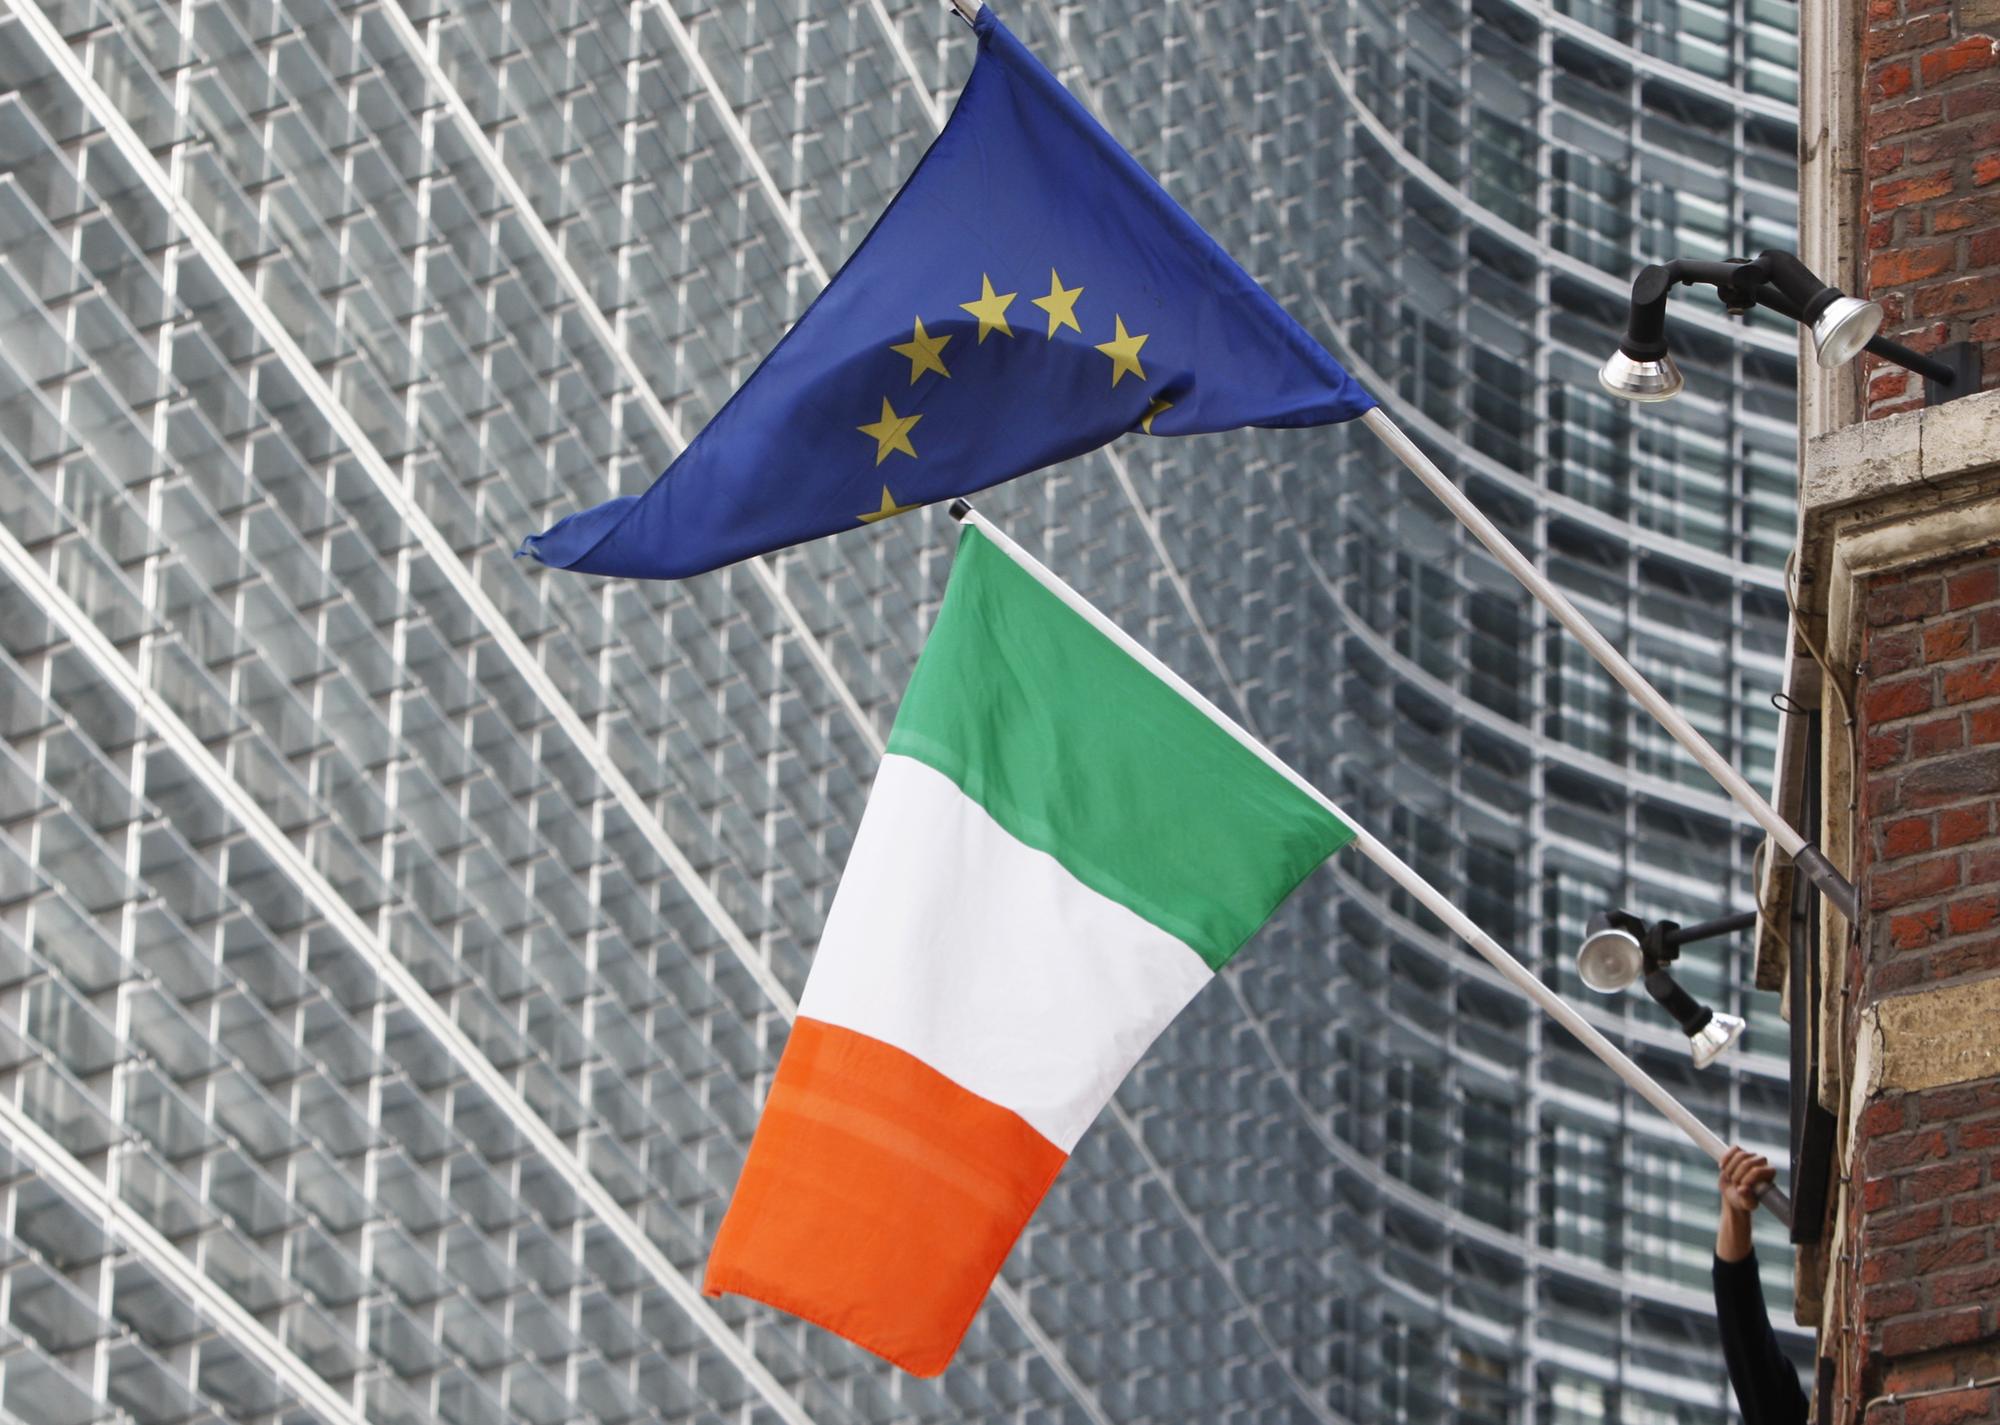 Les taux d'emprunts d'Etat irlandais ont grimpé jusqu'à 9%, menaçant le pays d'insolvabilité et l'Europe d'une contagion.